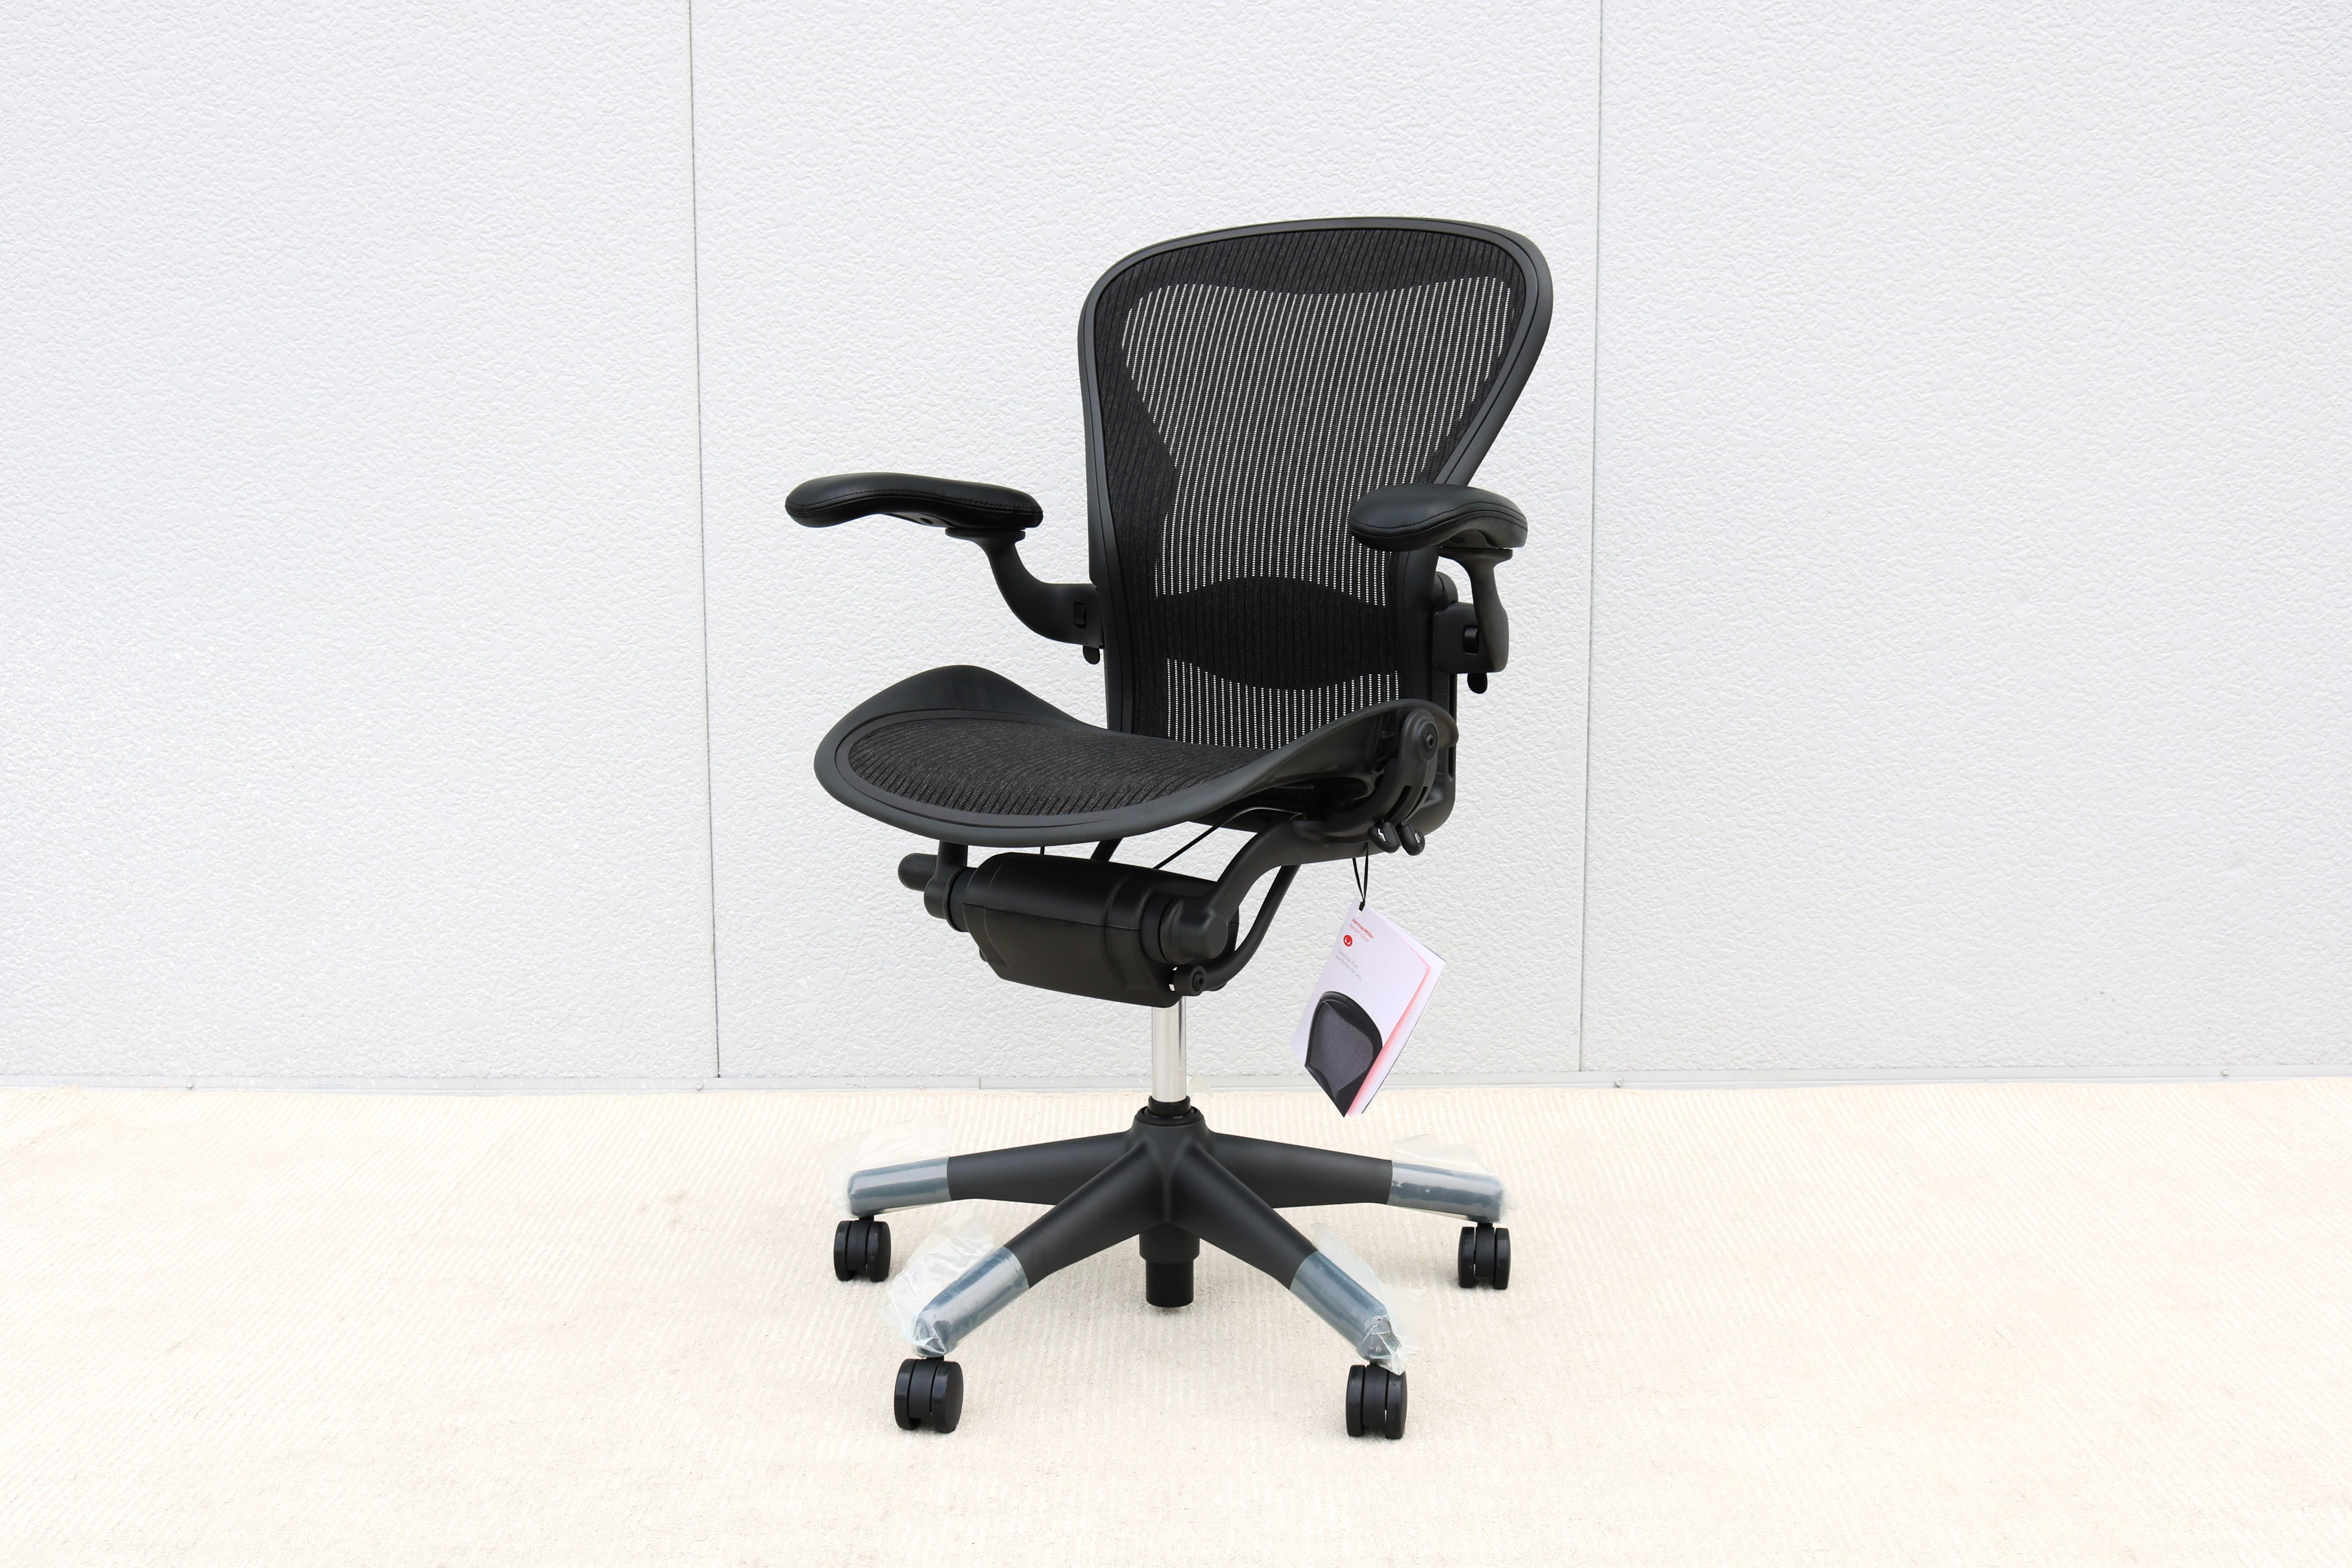 Chaise Aeron de taille (B) entièrement chargée avec tous les réglages par Herman Miller.
C'est la meilleure chaise de bureau ergonomique, la plus admirée et la plus reconnue qui ait jamais été fabriquée.
Sa conception innovante et sa prise en charge